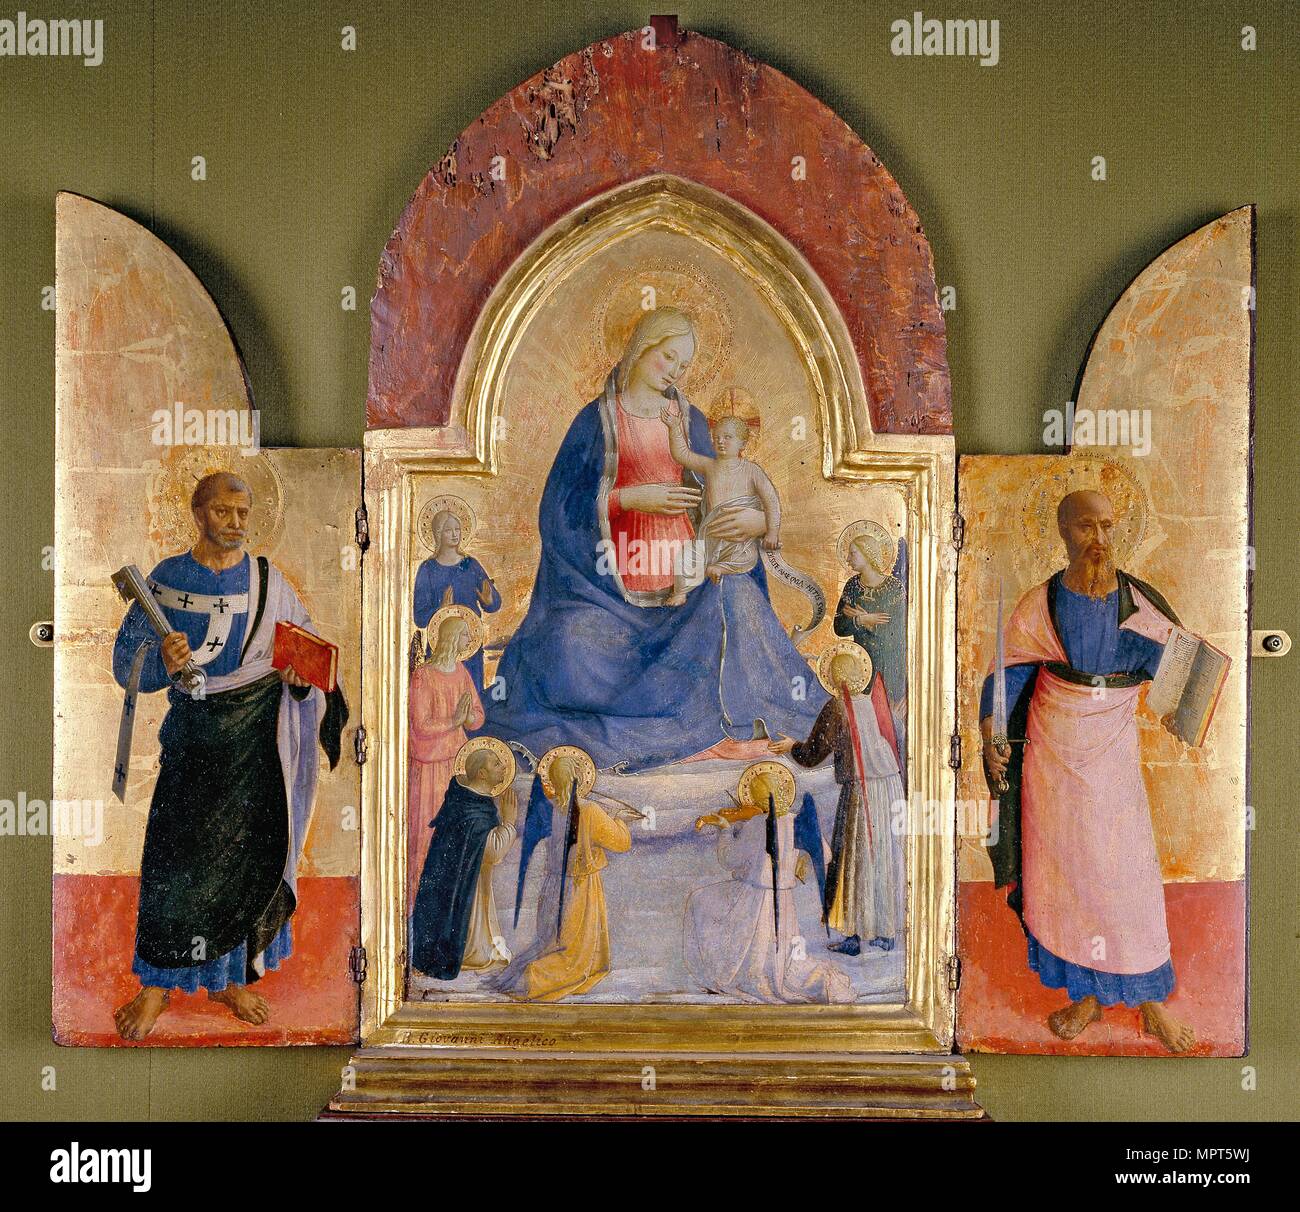 La Virgen y el Niño con Ángeles y San Dominicana; San Pedro (a la izquierda); San Pablo (a la derecha), artista del siglo XV: Estudio de Fra Angelico. Foto de stock